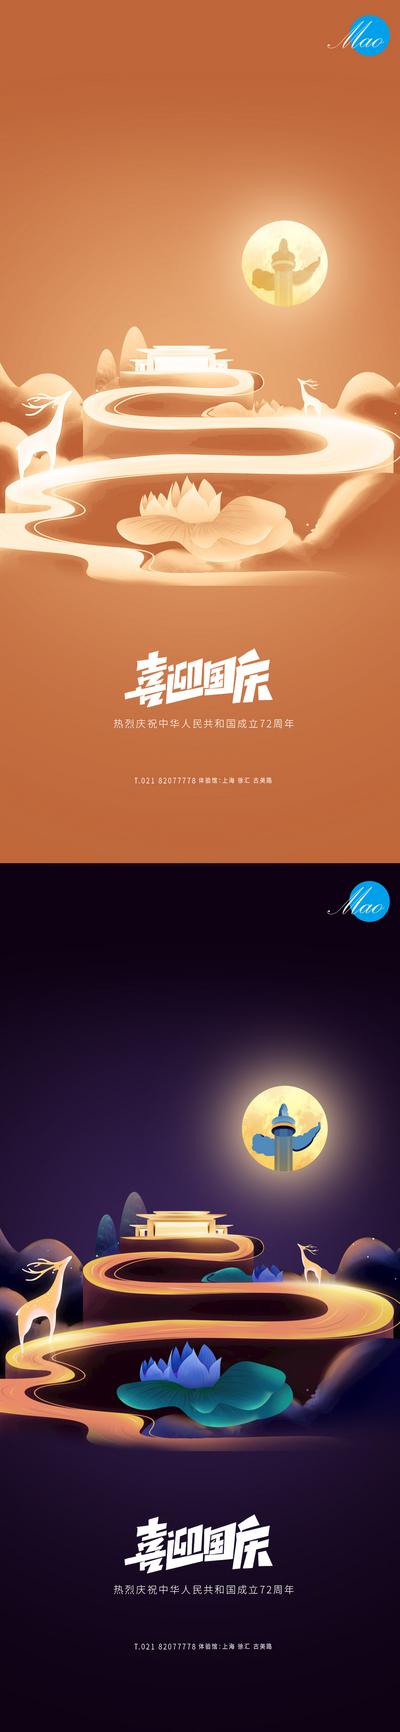 南门网 海报 公历节日 国庆节 插画 系列